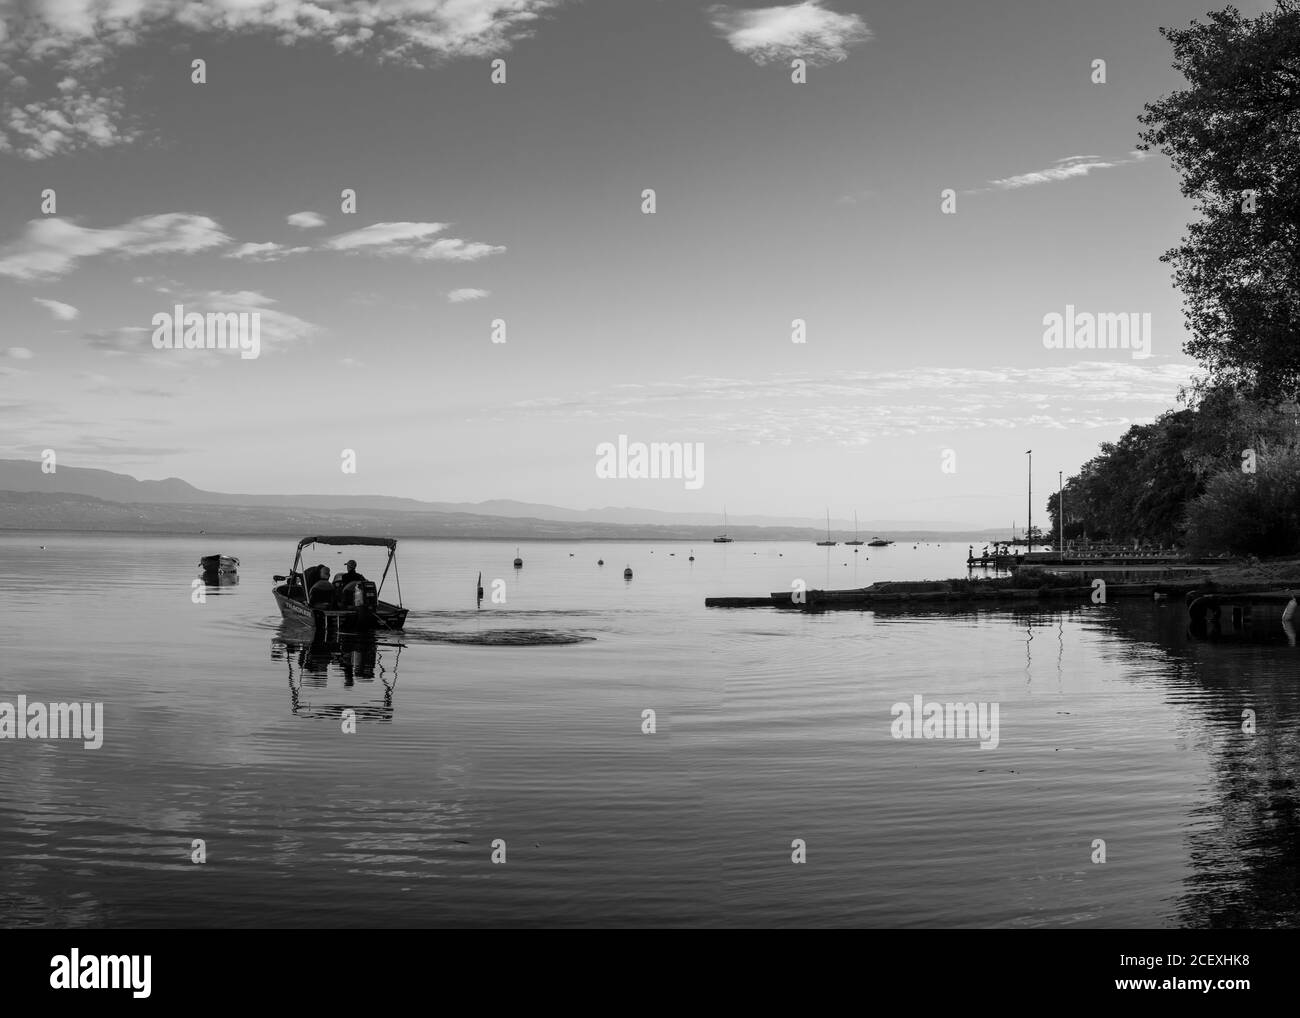 Ein Boot auf dem Genfer See, schwarz-weiß Bild Stockfoto